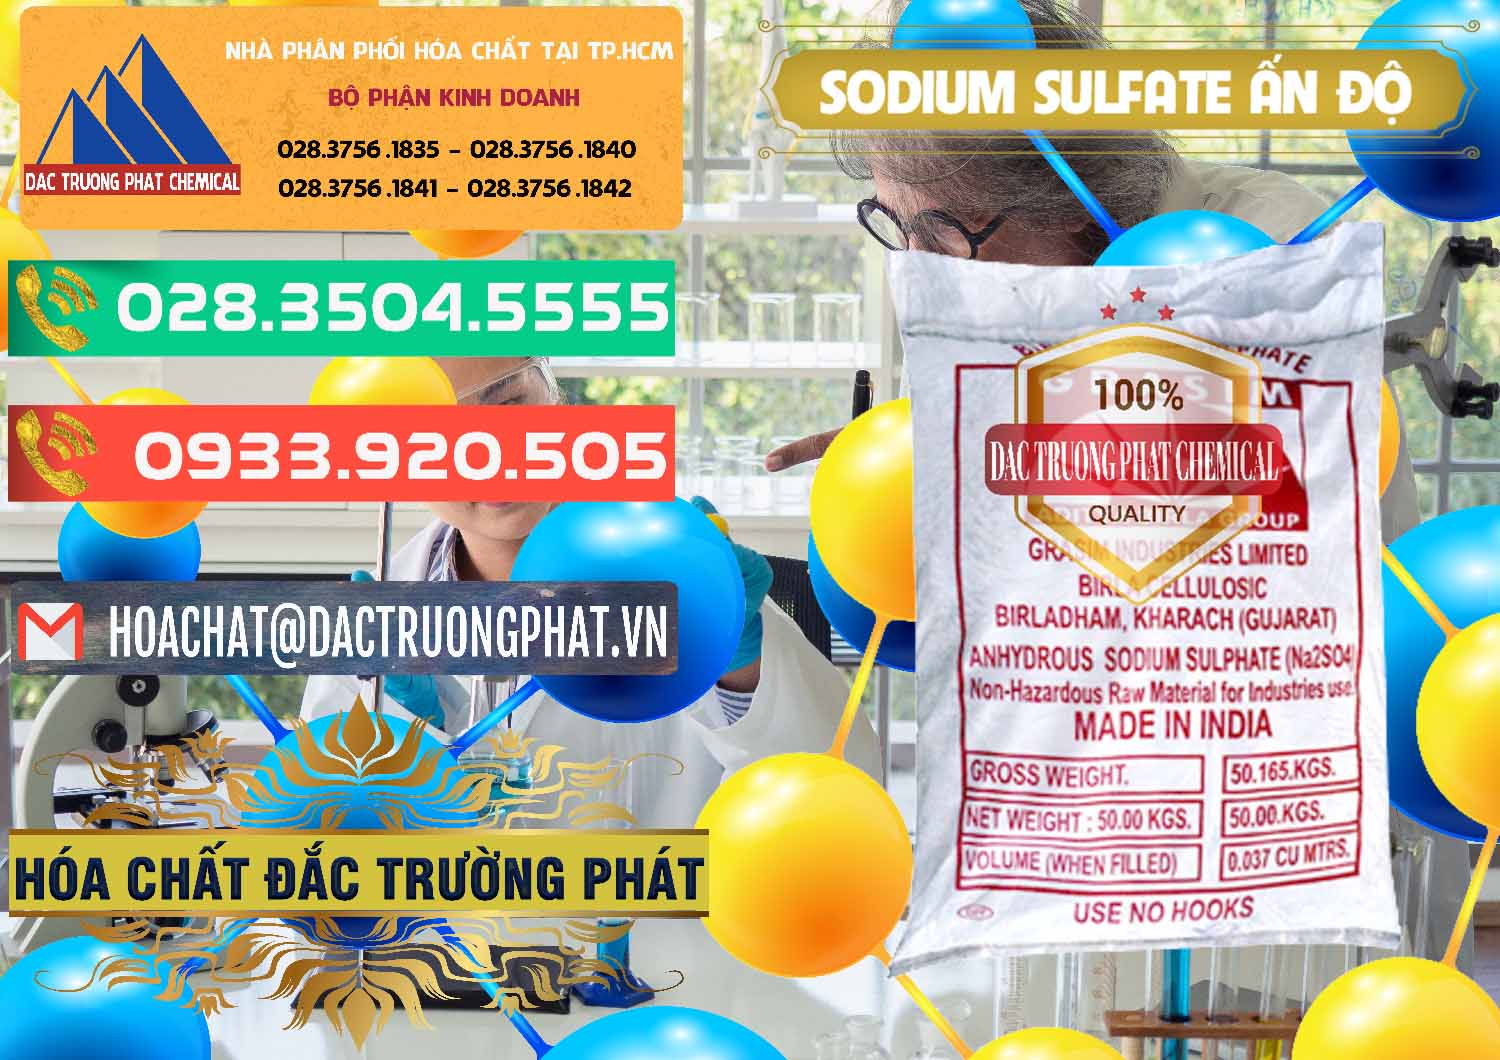 Cty bán & phân phối Sodium Sulphate - Muối Sunfat Na2SO4 Aditya Birla Grasim Ấn Độ India - 0462 - Cty chuyên nhập khẩu ( cung cấp ) hóa chất tại TP.HCM - congtyhoachat.com.vn